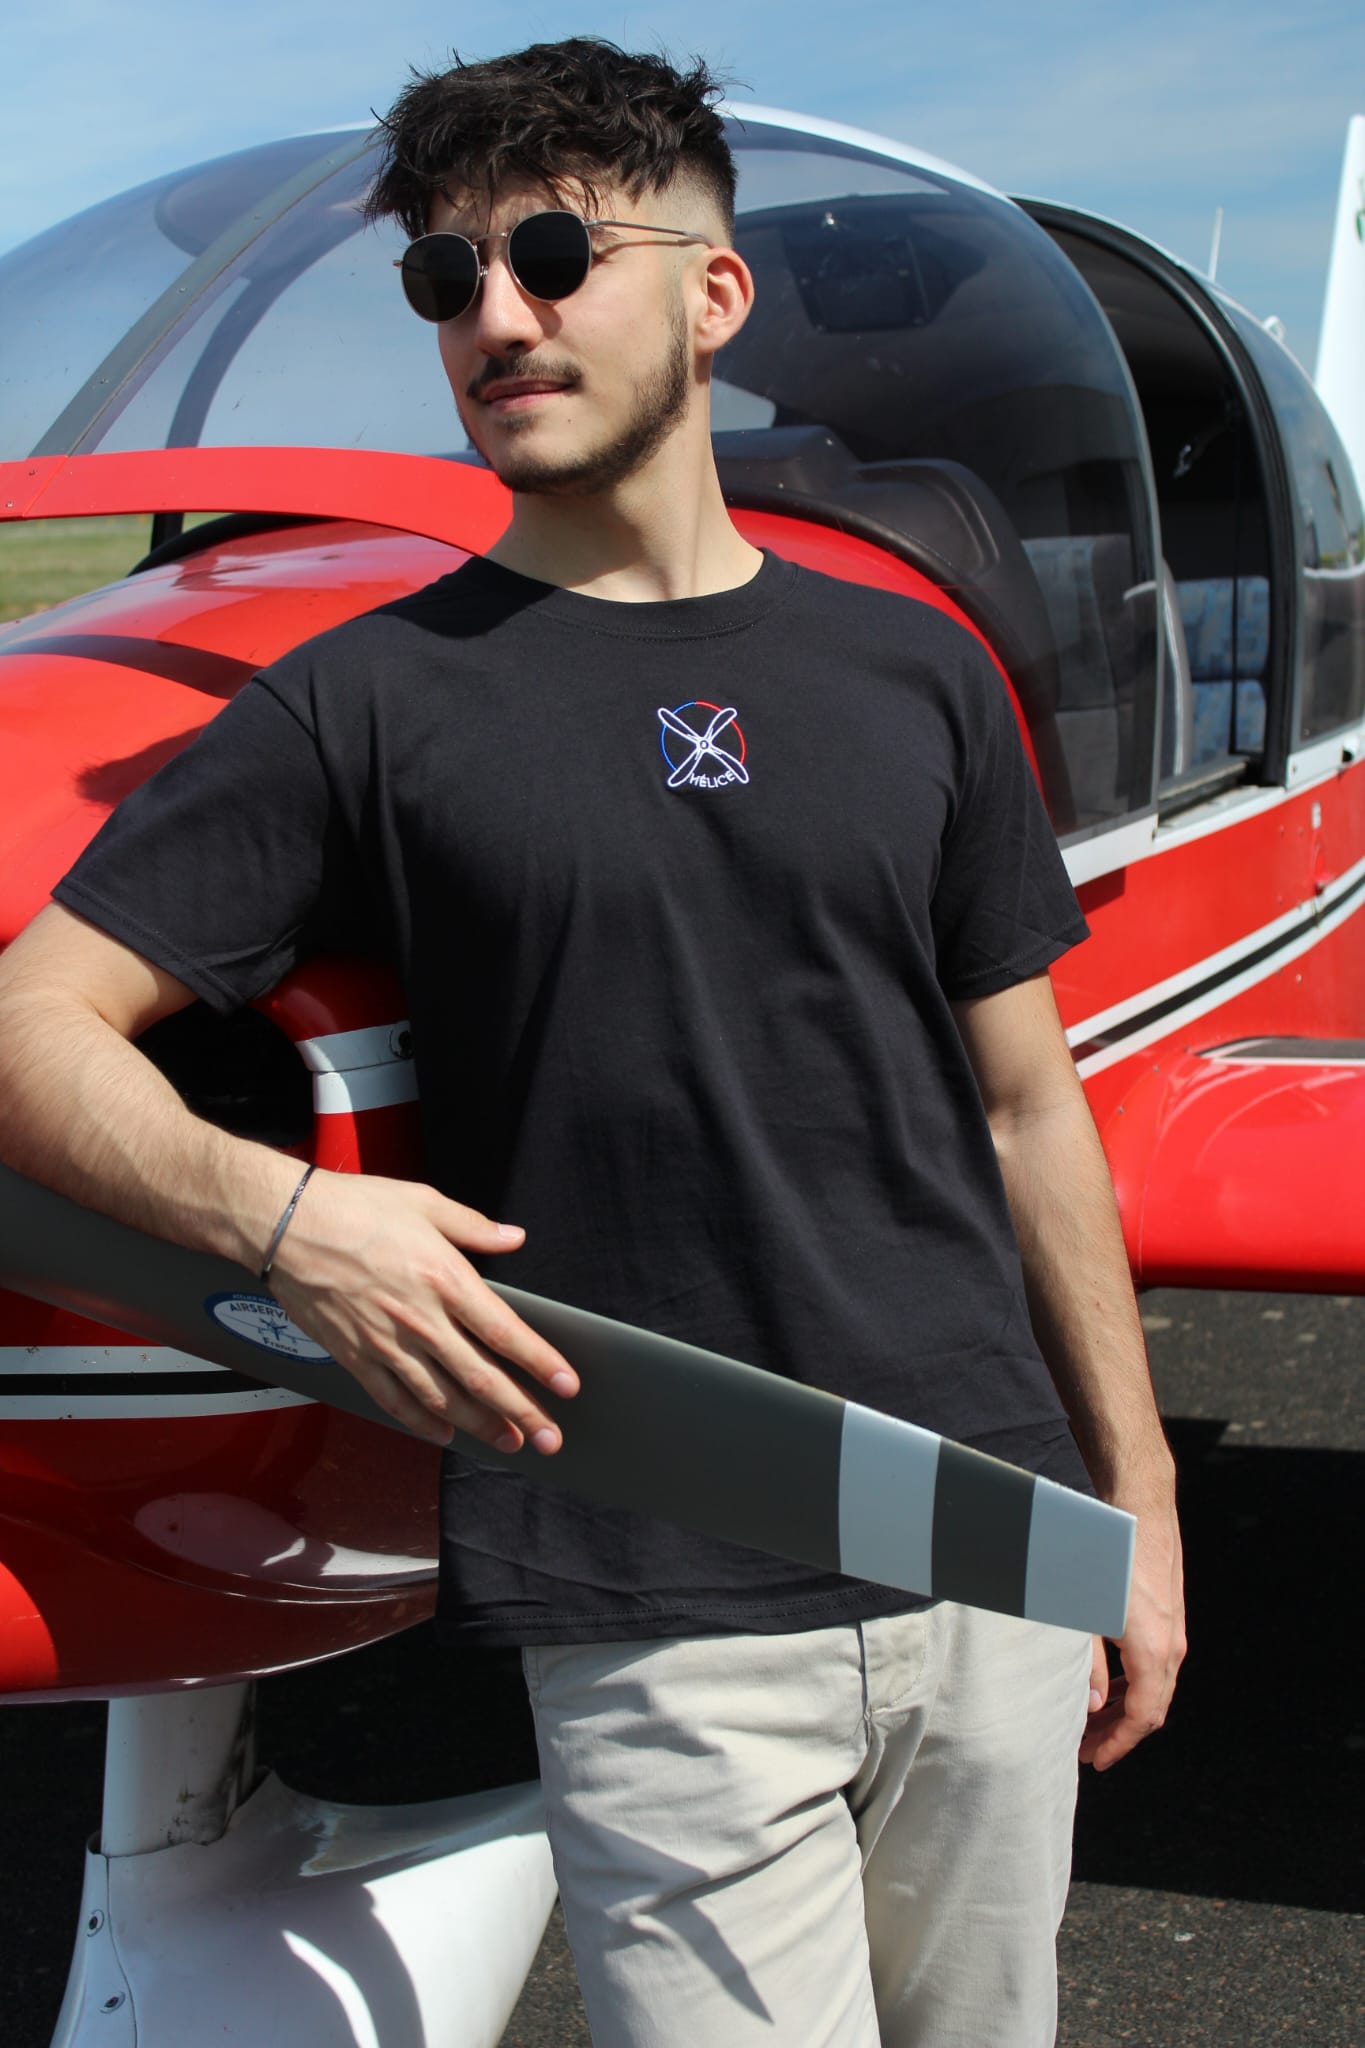 Pilote d'avion portant le tee-shirt noir 123.5 helice-aero.fr